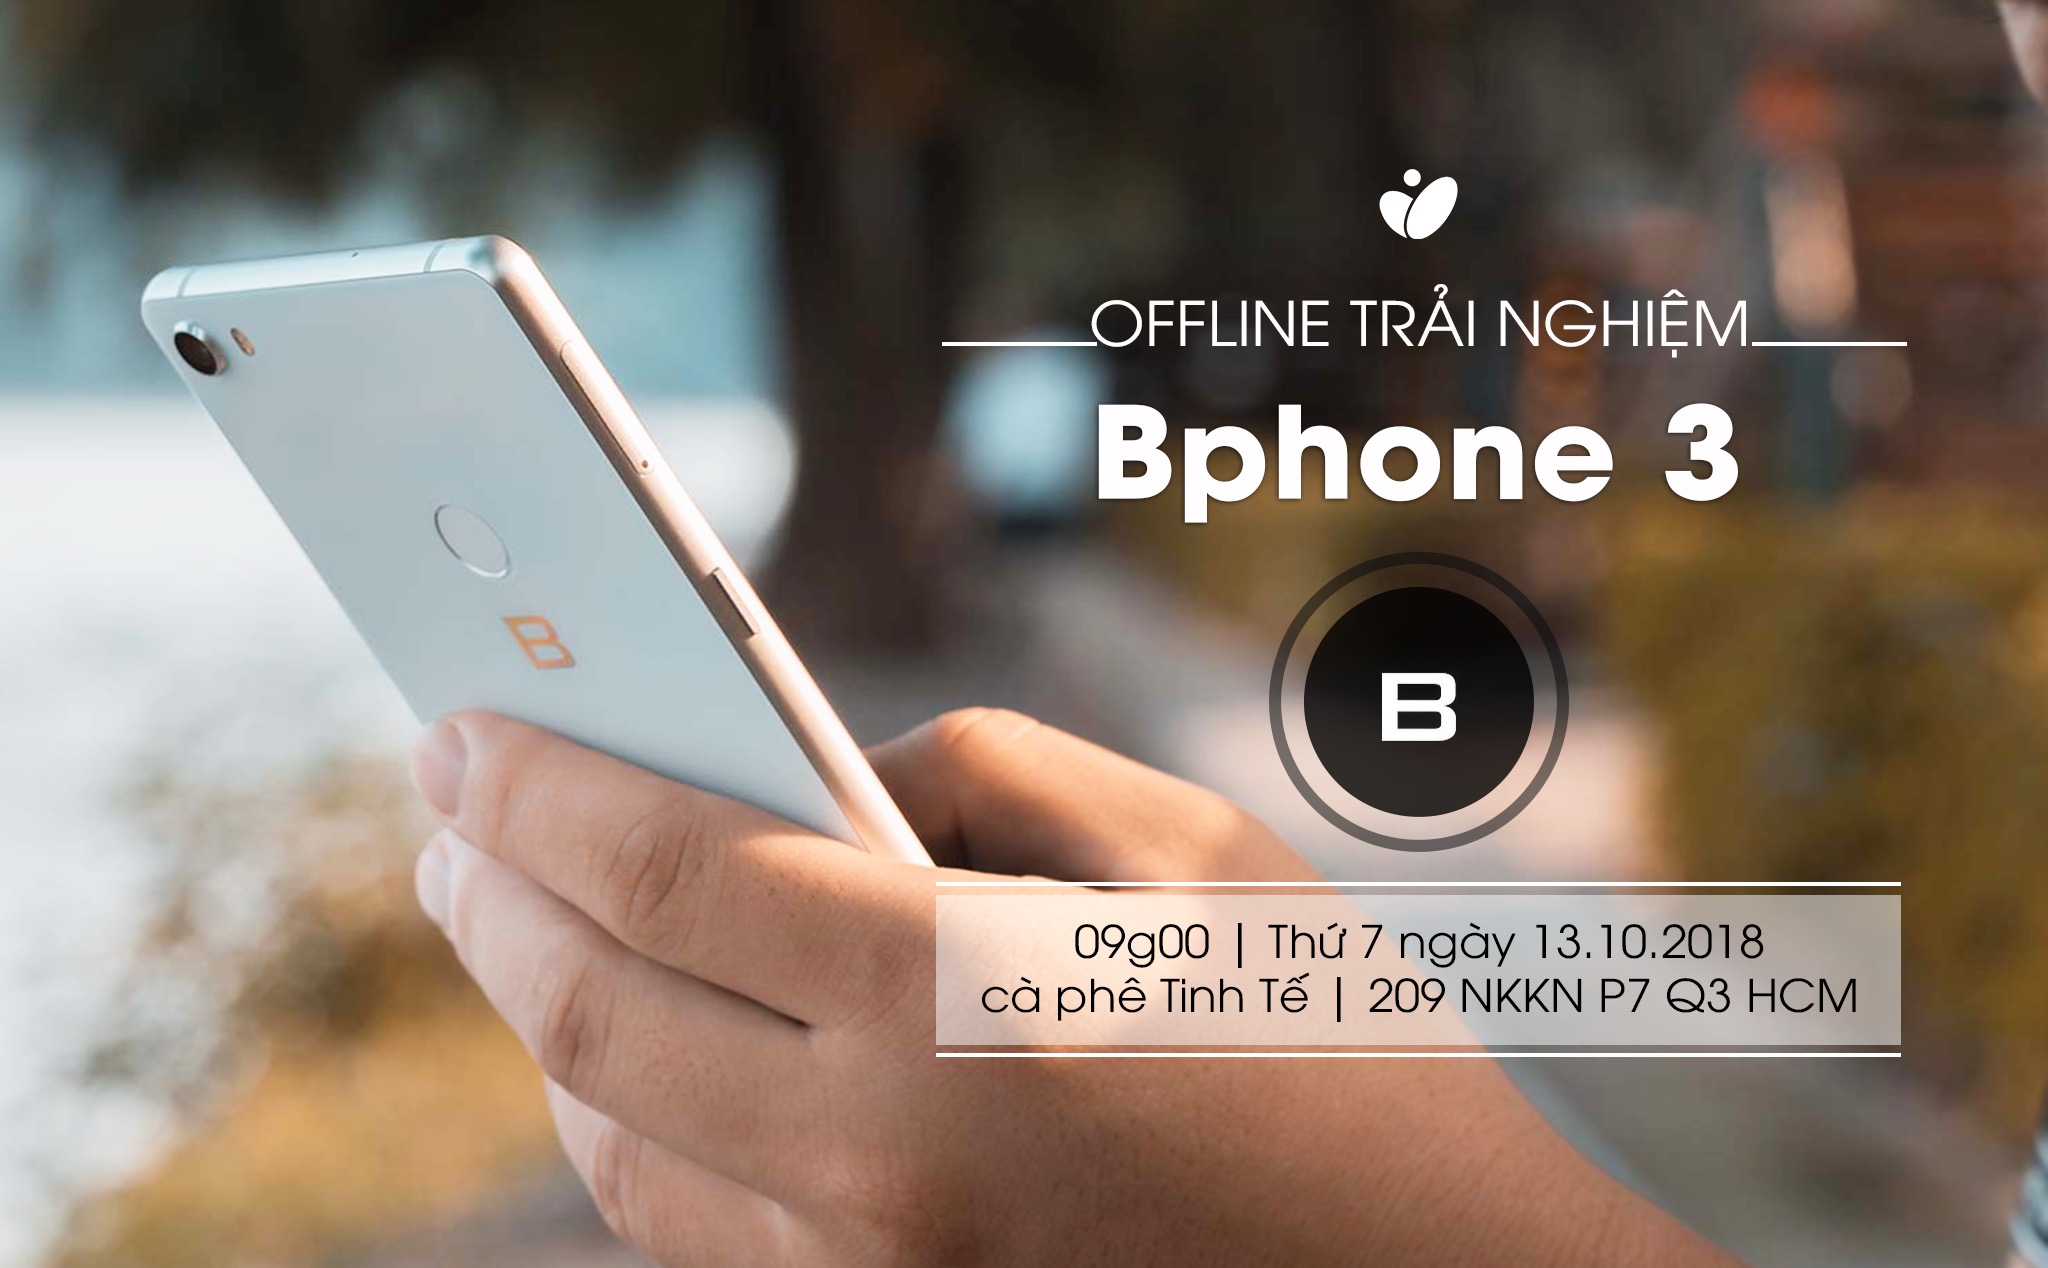 Mời đăng ký tham dự offline trải nghiệm Bphone 3